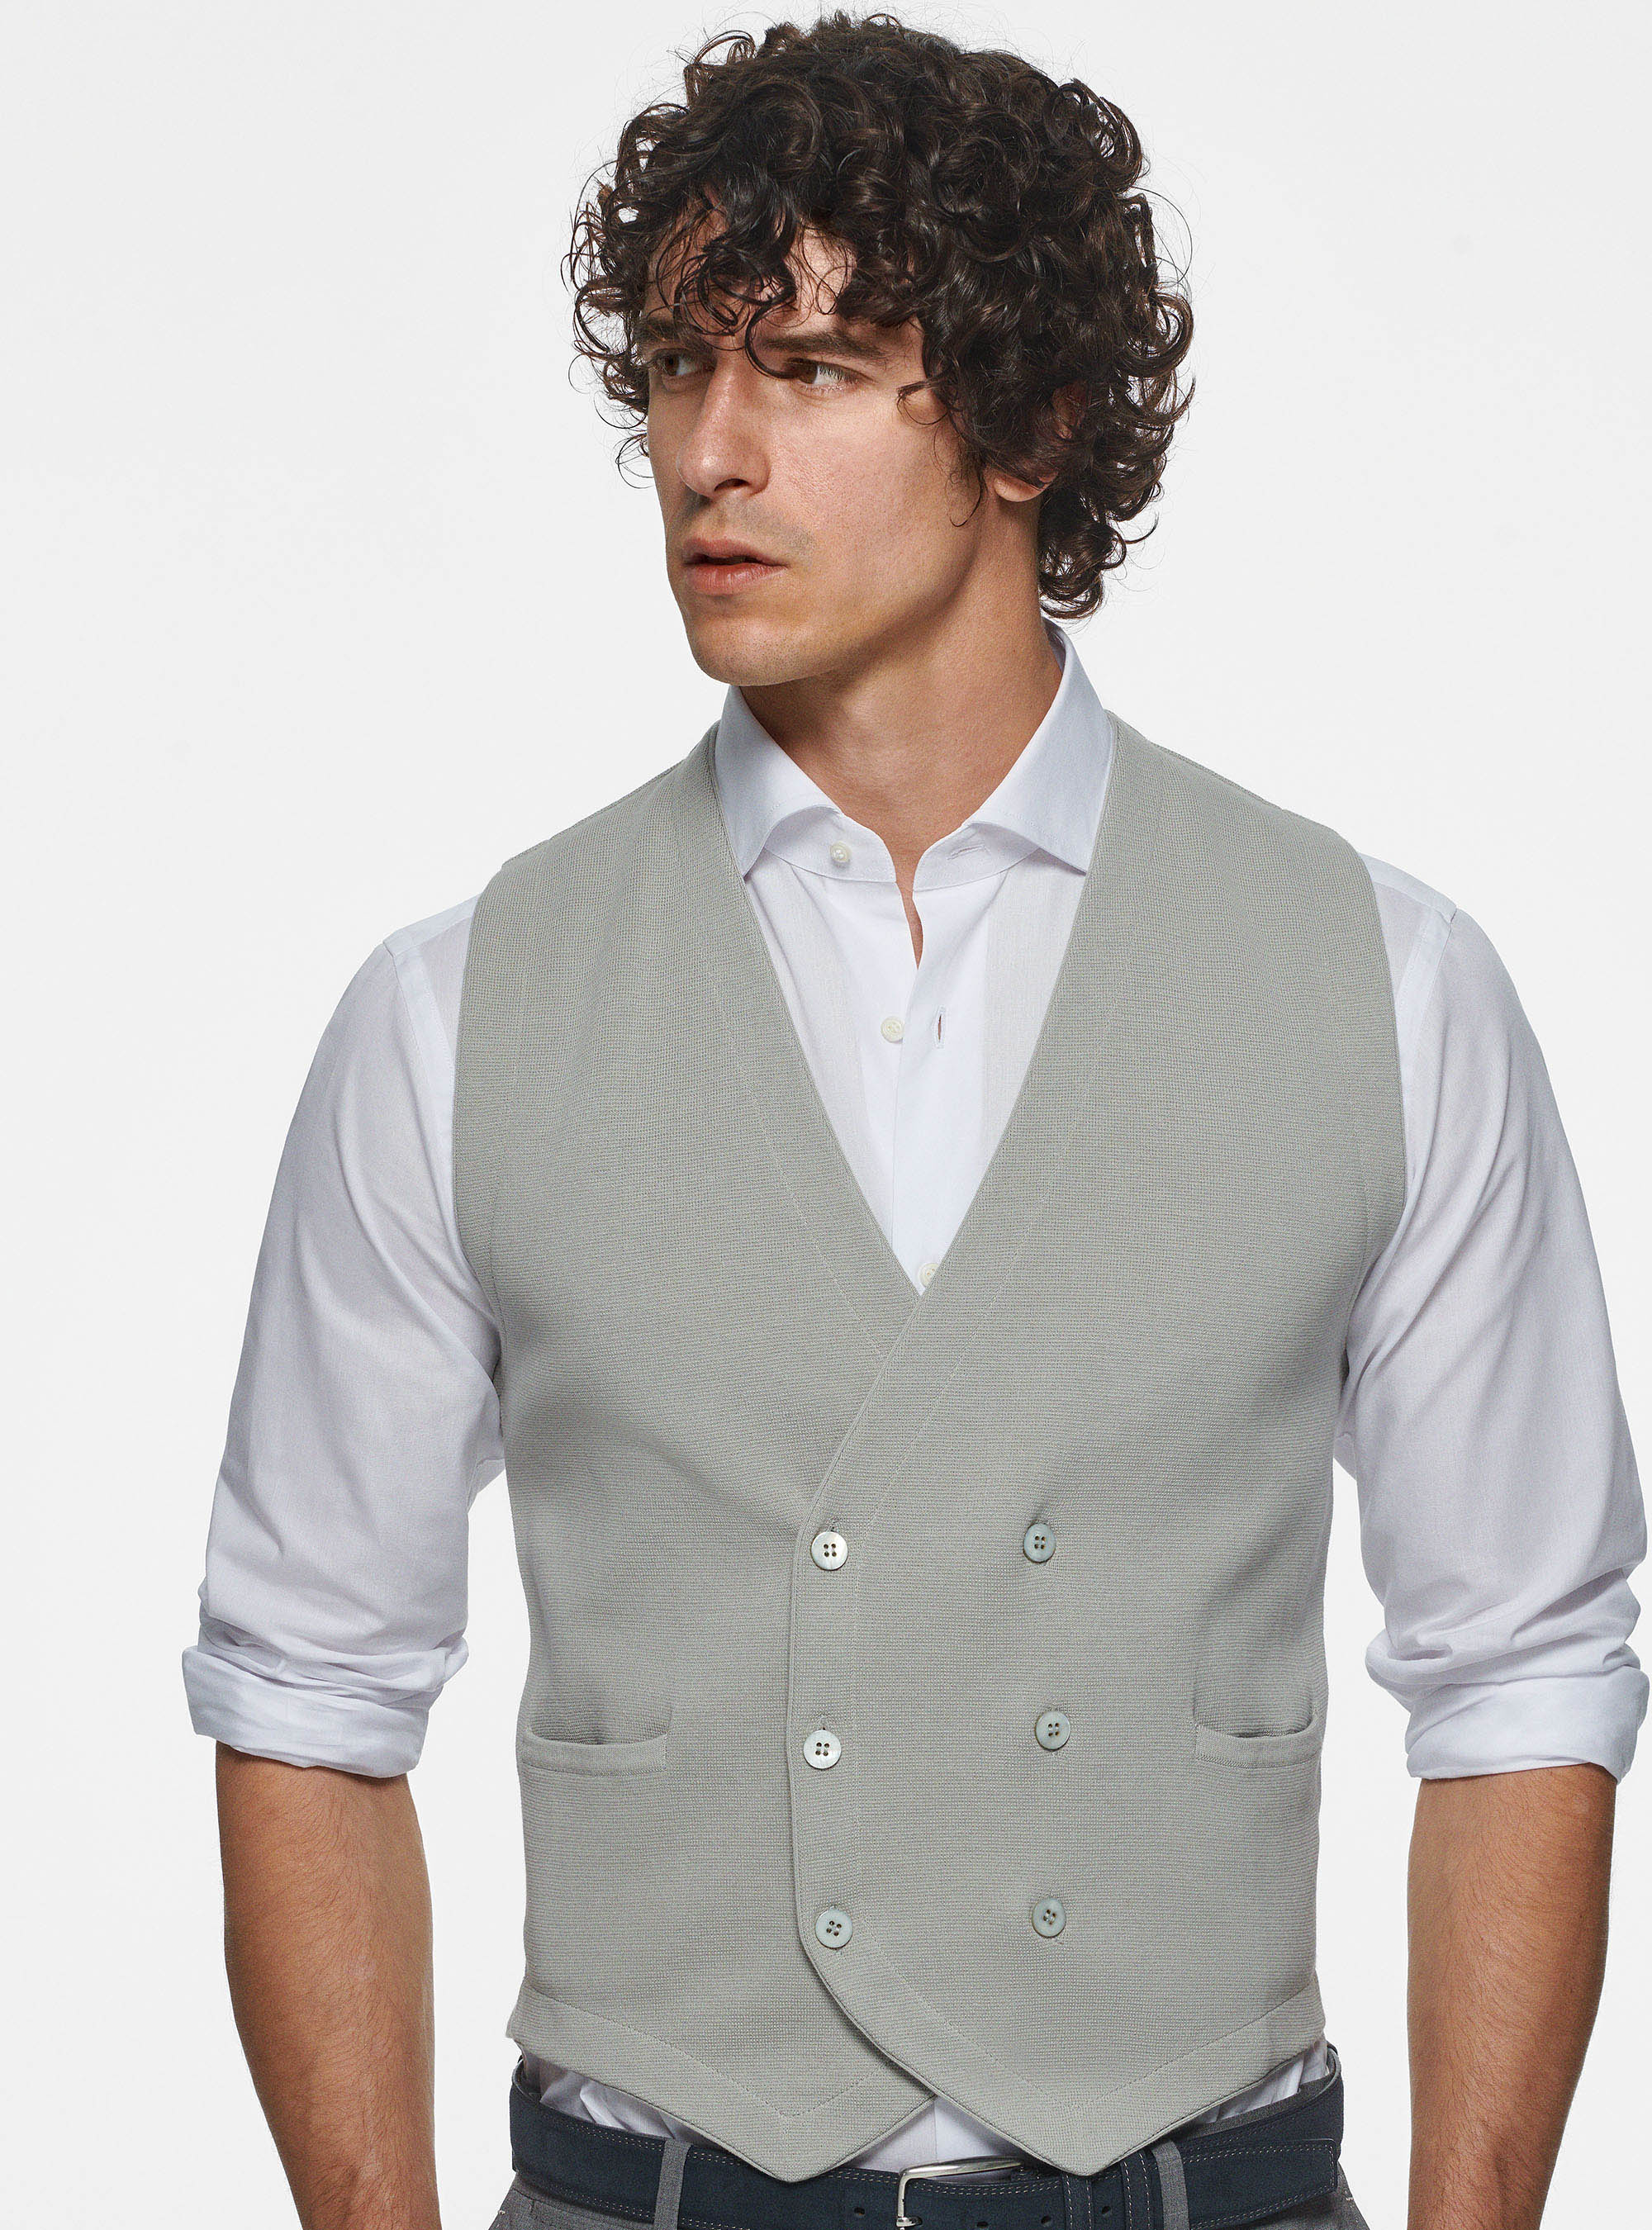 Gutteridge - Gilet en tricot de coton à double boutonnage, , Perla 0178c, Taille: XL